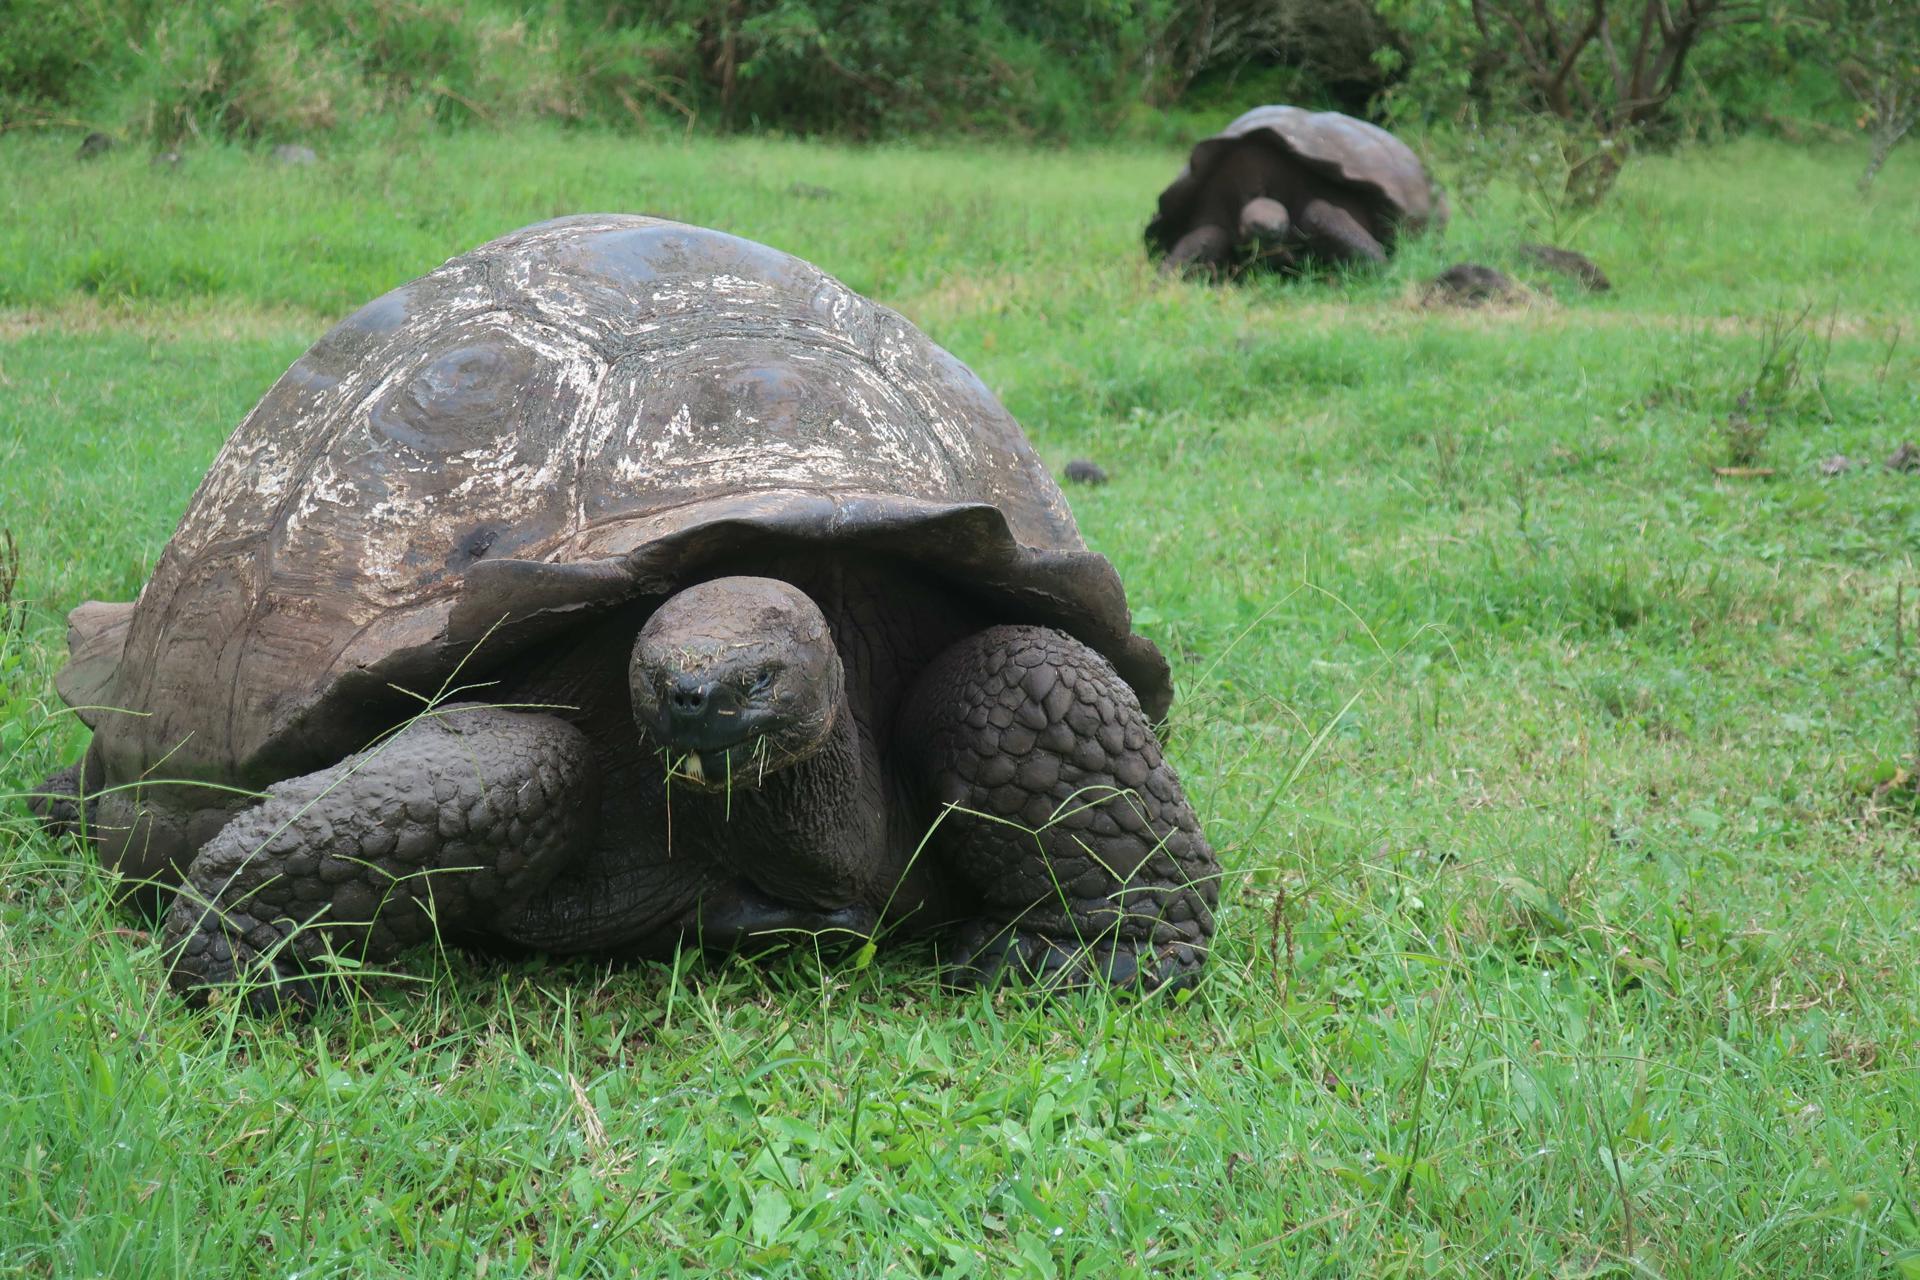 Las tortugas gigantes de la isla más poblada de las Galápagos, afectadas por el plástico